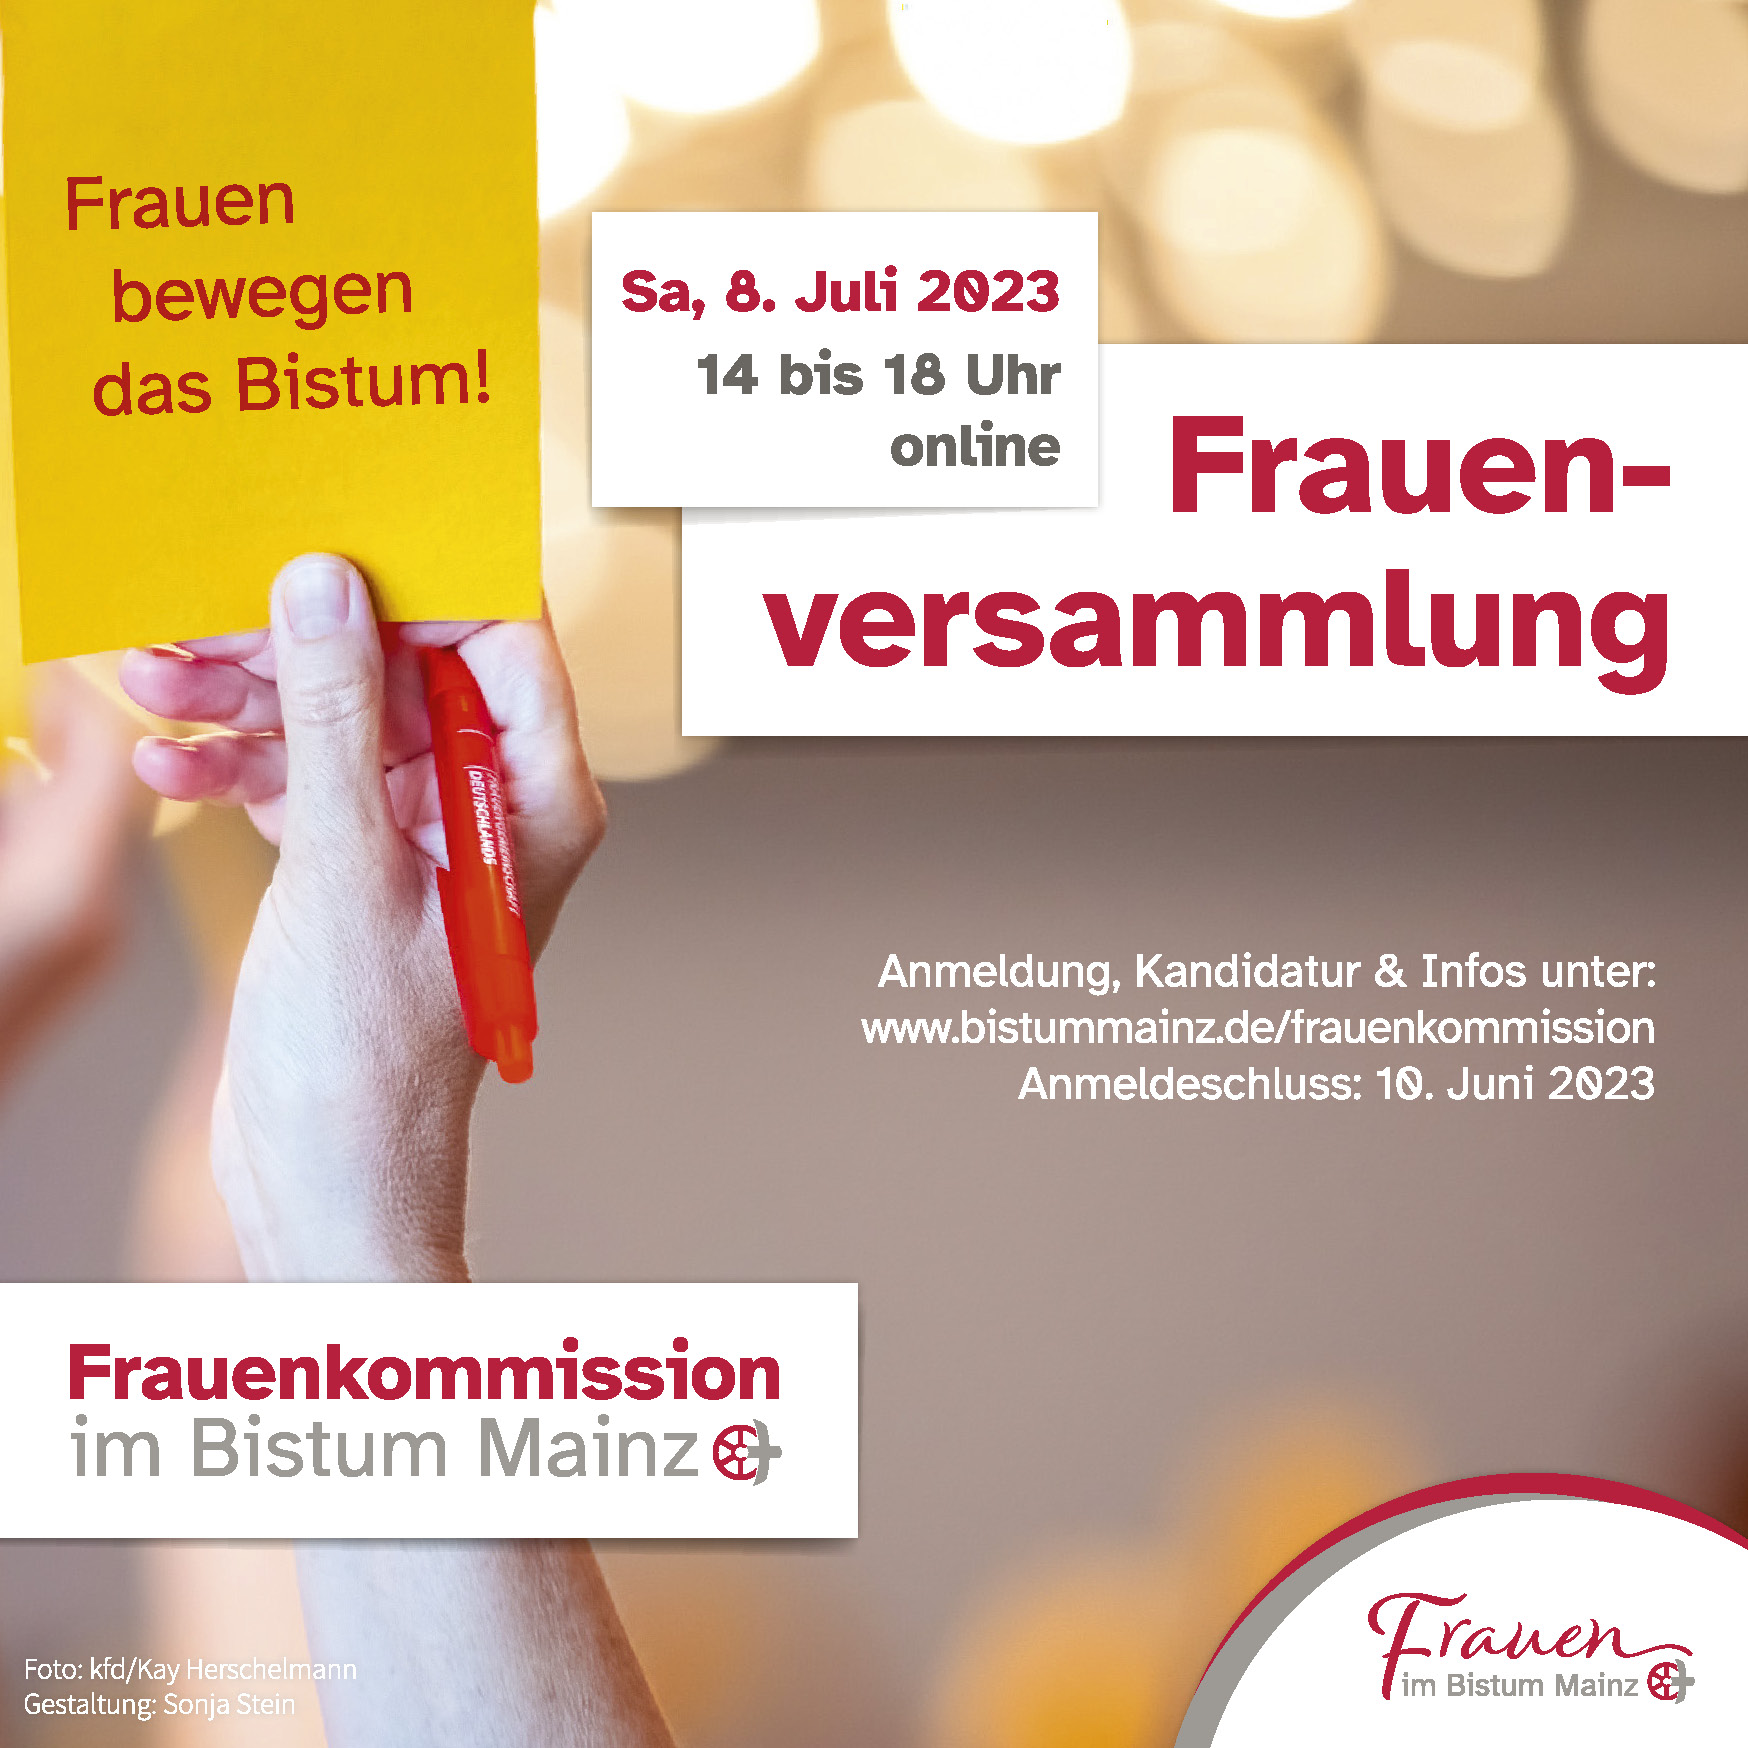 Plakat_Frauenversammlung_2023_web (c) Foto: kfd/Kay Herschelmann Gestaltung: Sonja Stein